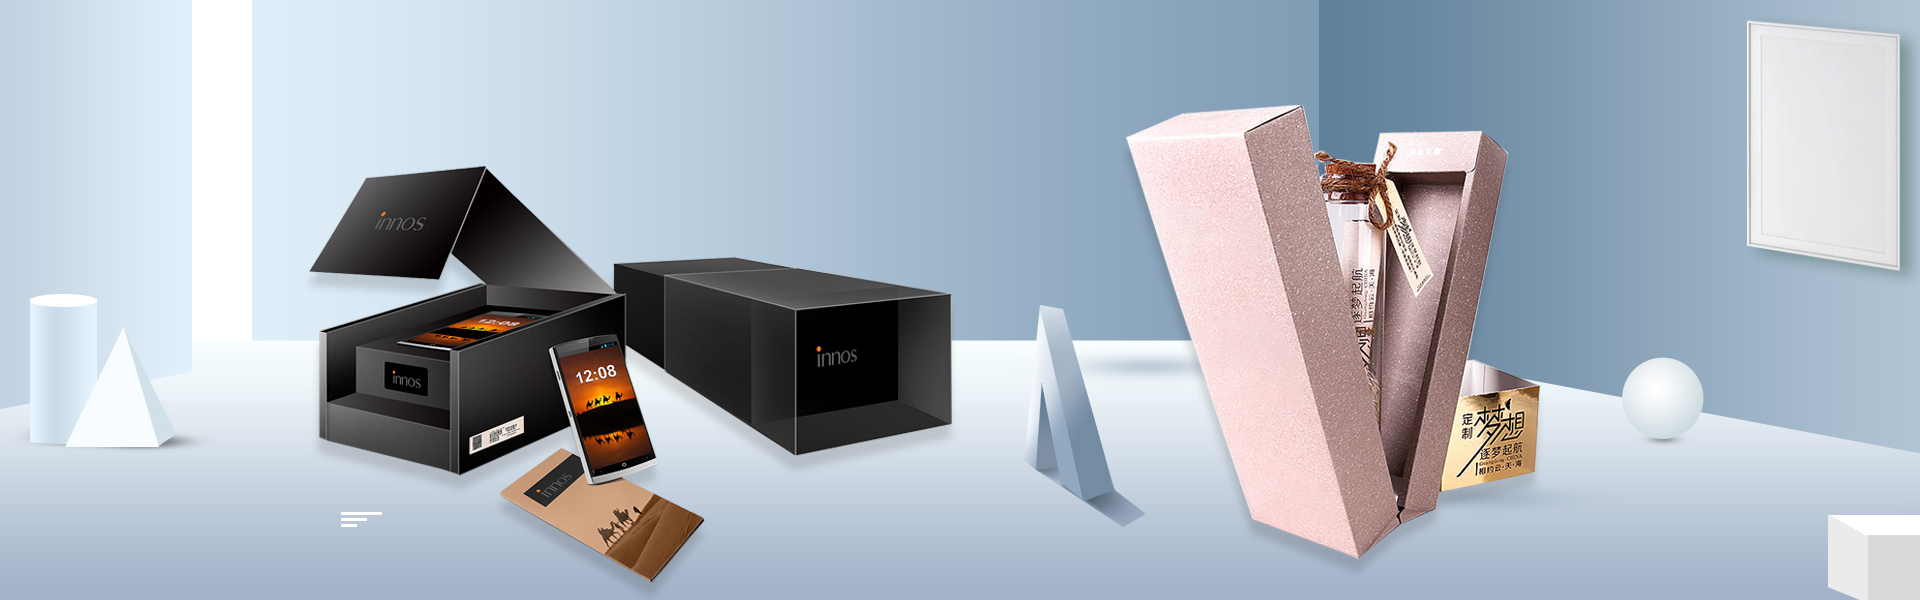 Skrzynkaniestandardowa, pudełko, pudełko kosmetyczne,Beifan Packaging Co., Ltd.